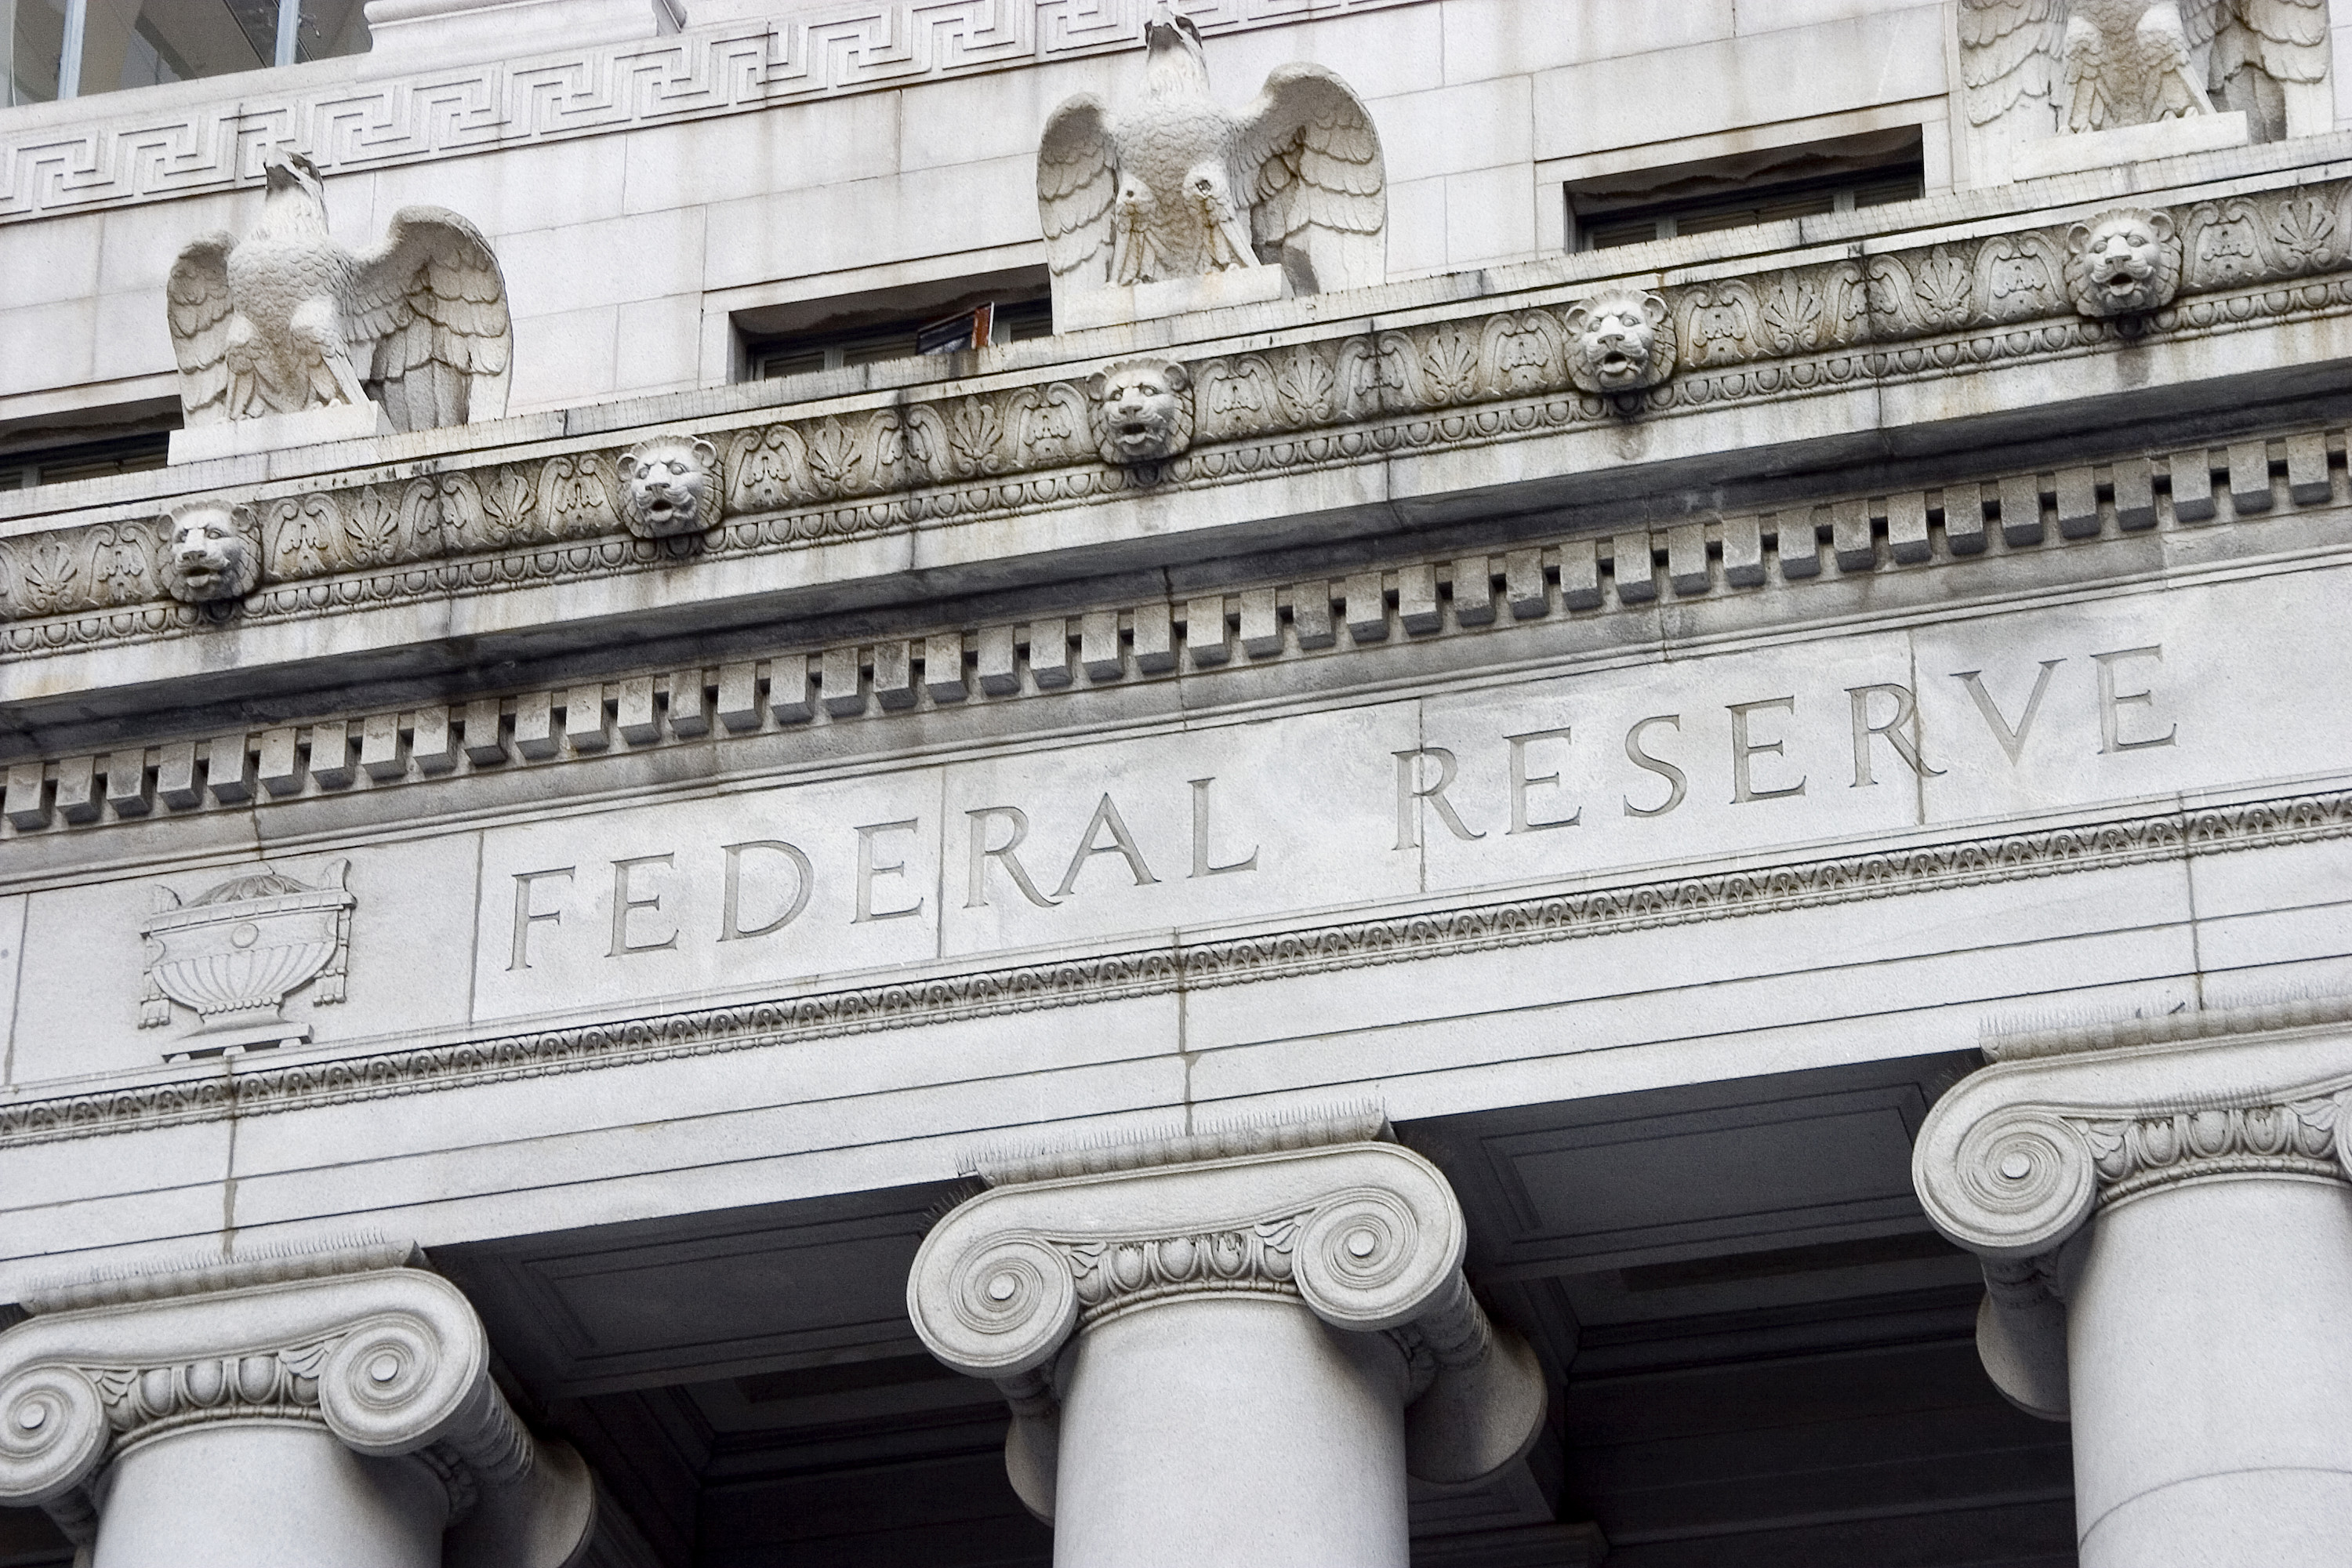 La Fed mantiene abierta la opción de subir los tipos en diciembre